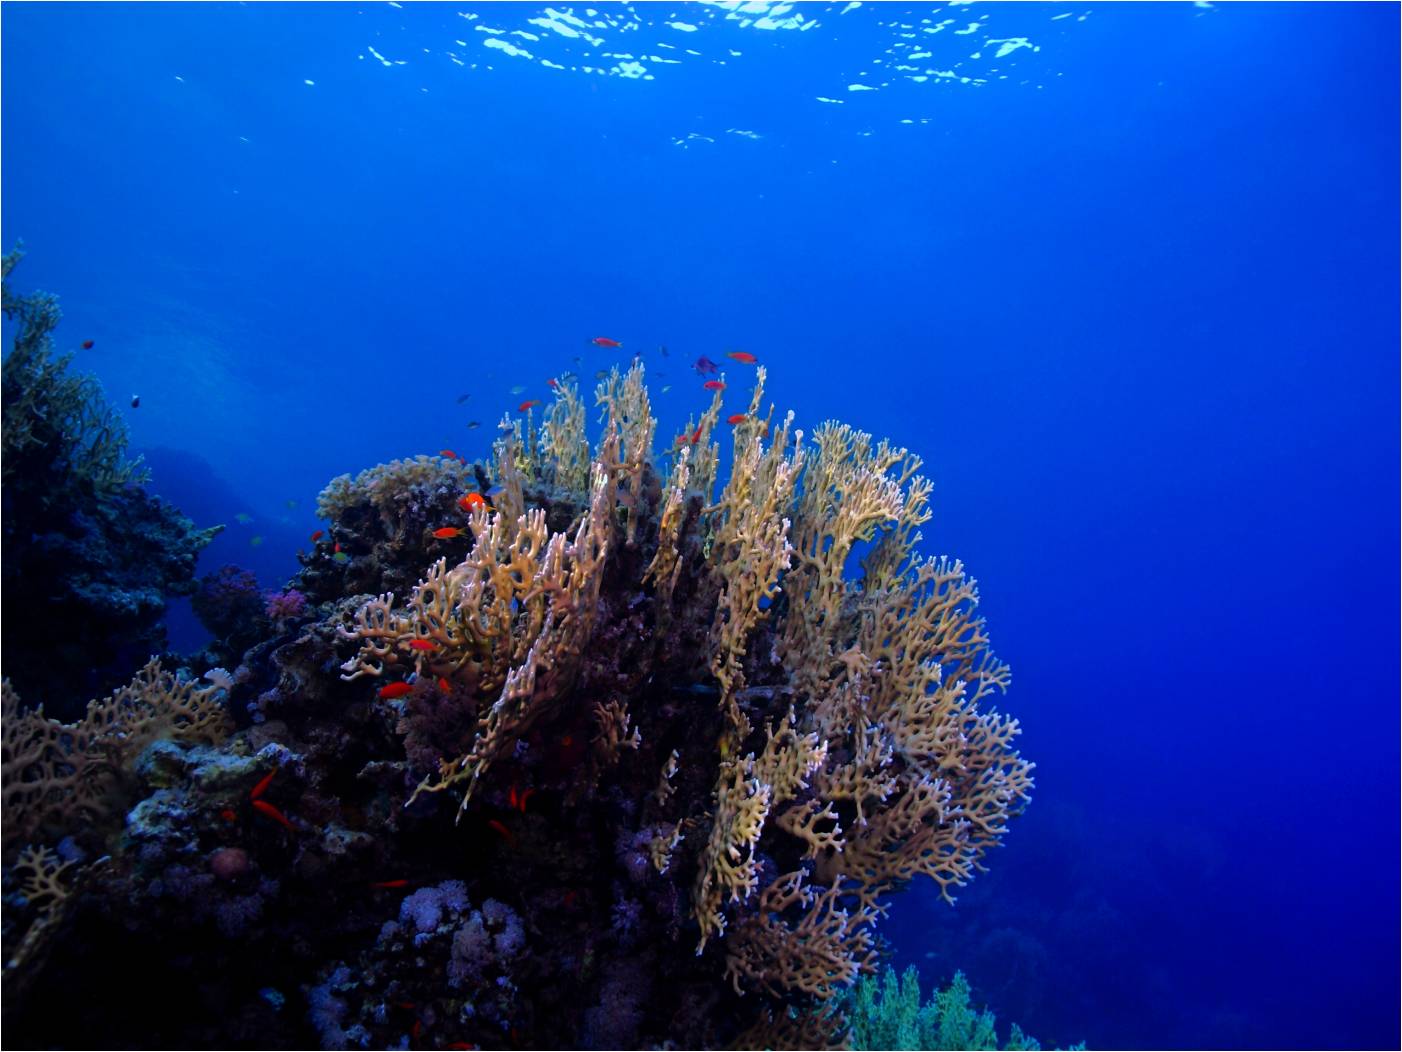 Nádherné korály, jedna z prvních fotografií pořízená hned následující den po příletu